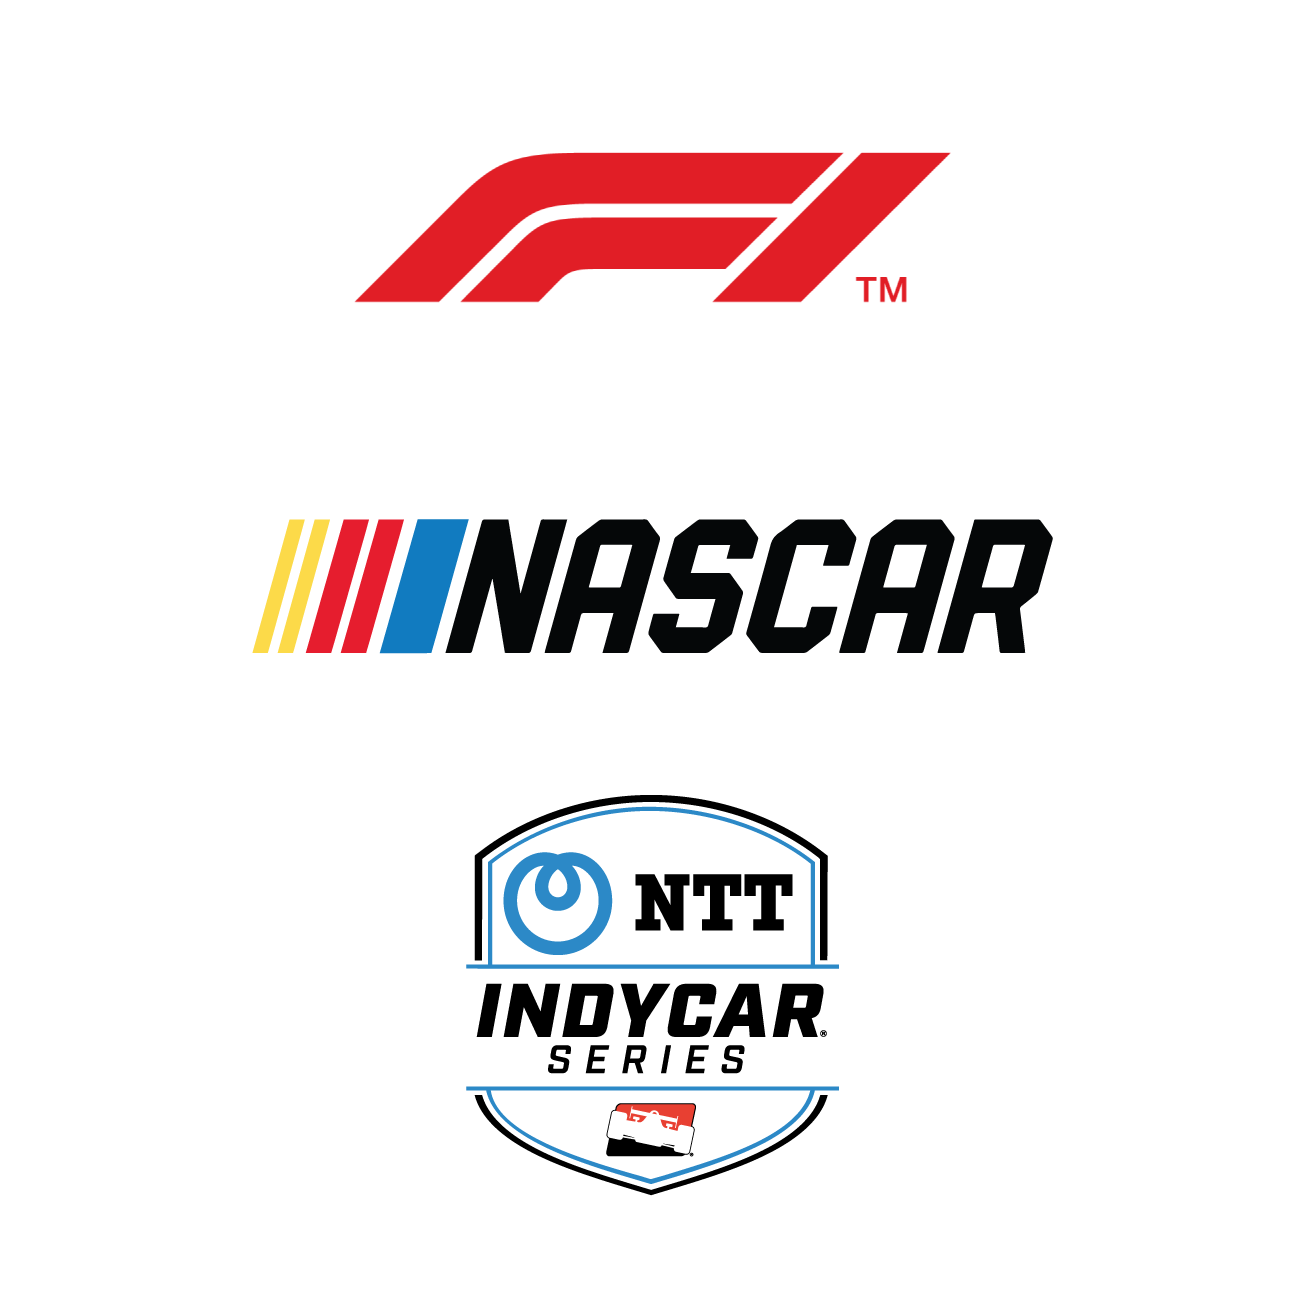 Series Logos